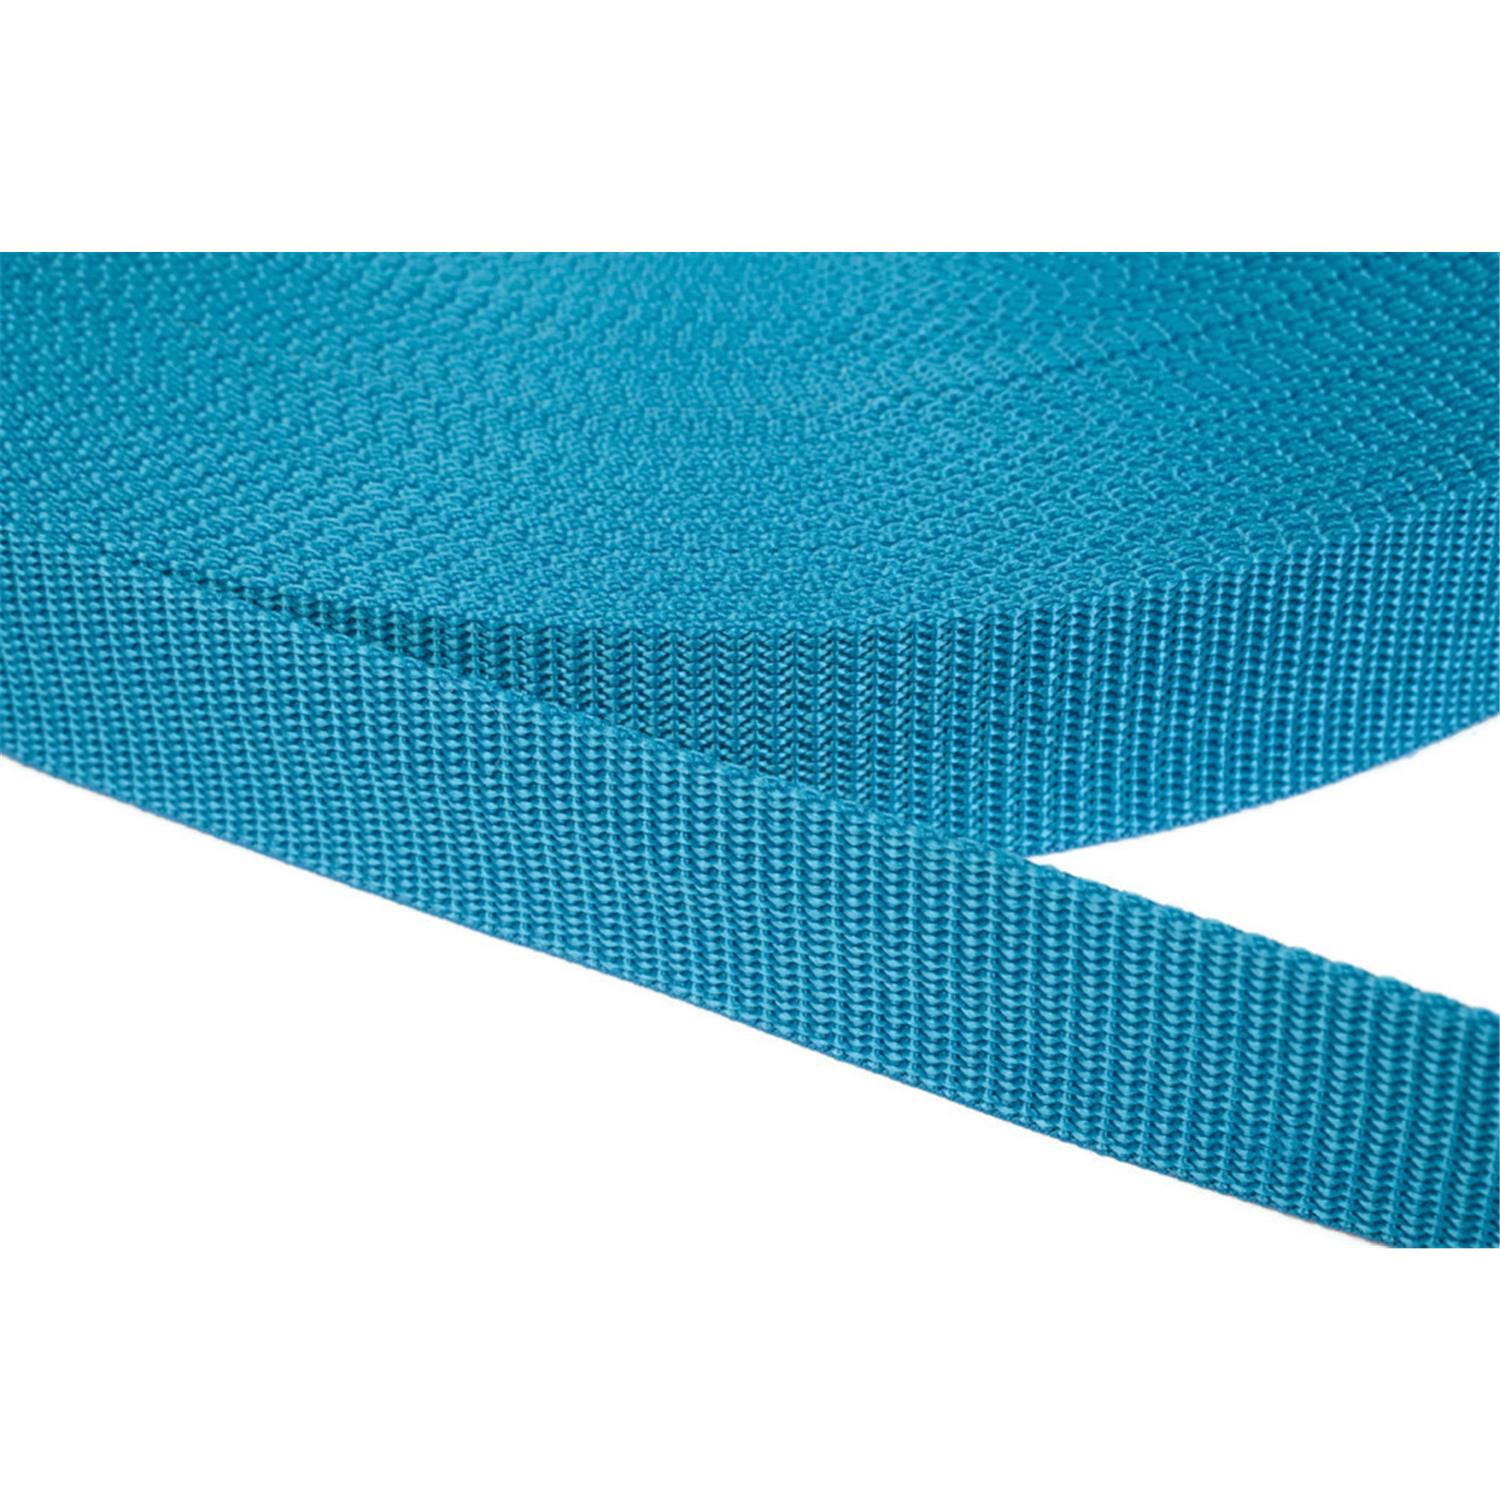 Gurtband 10mm breit aus Polypropylen in 41 Farben 29 - türkis 12 Meter